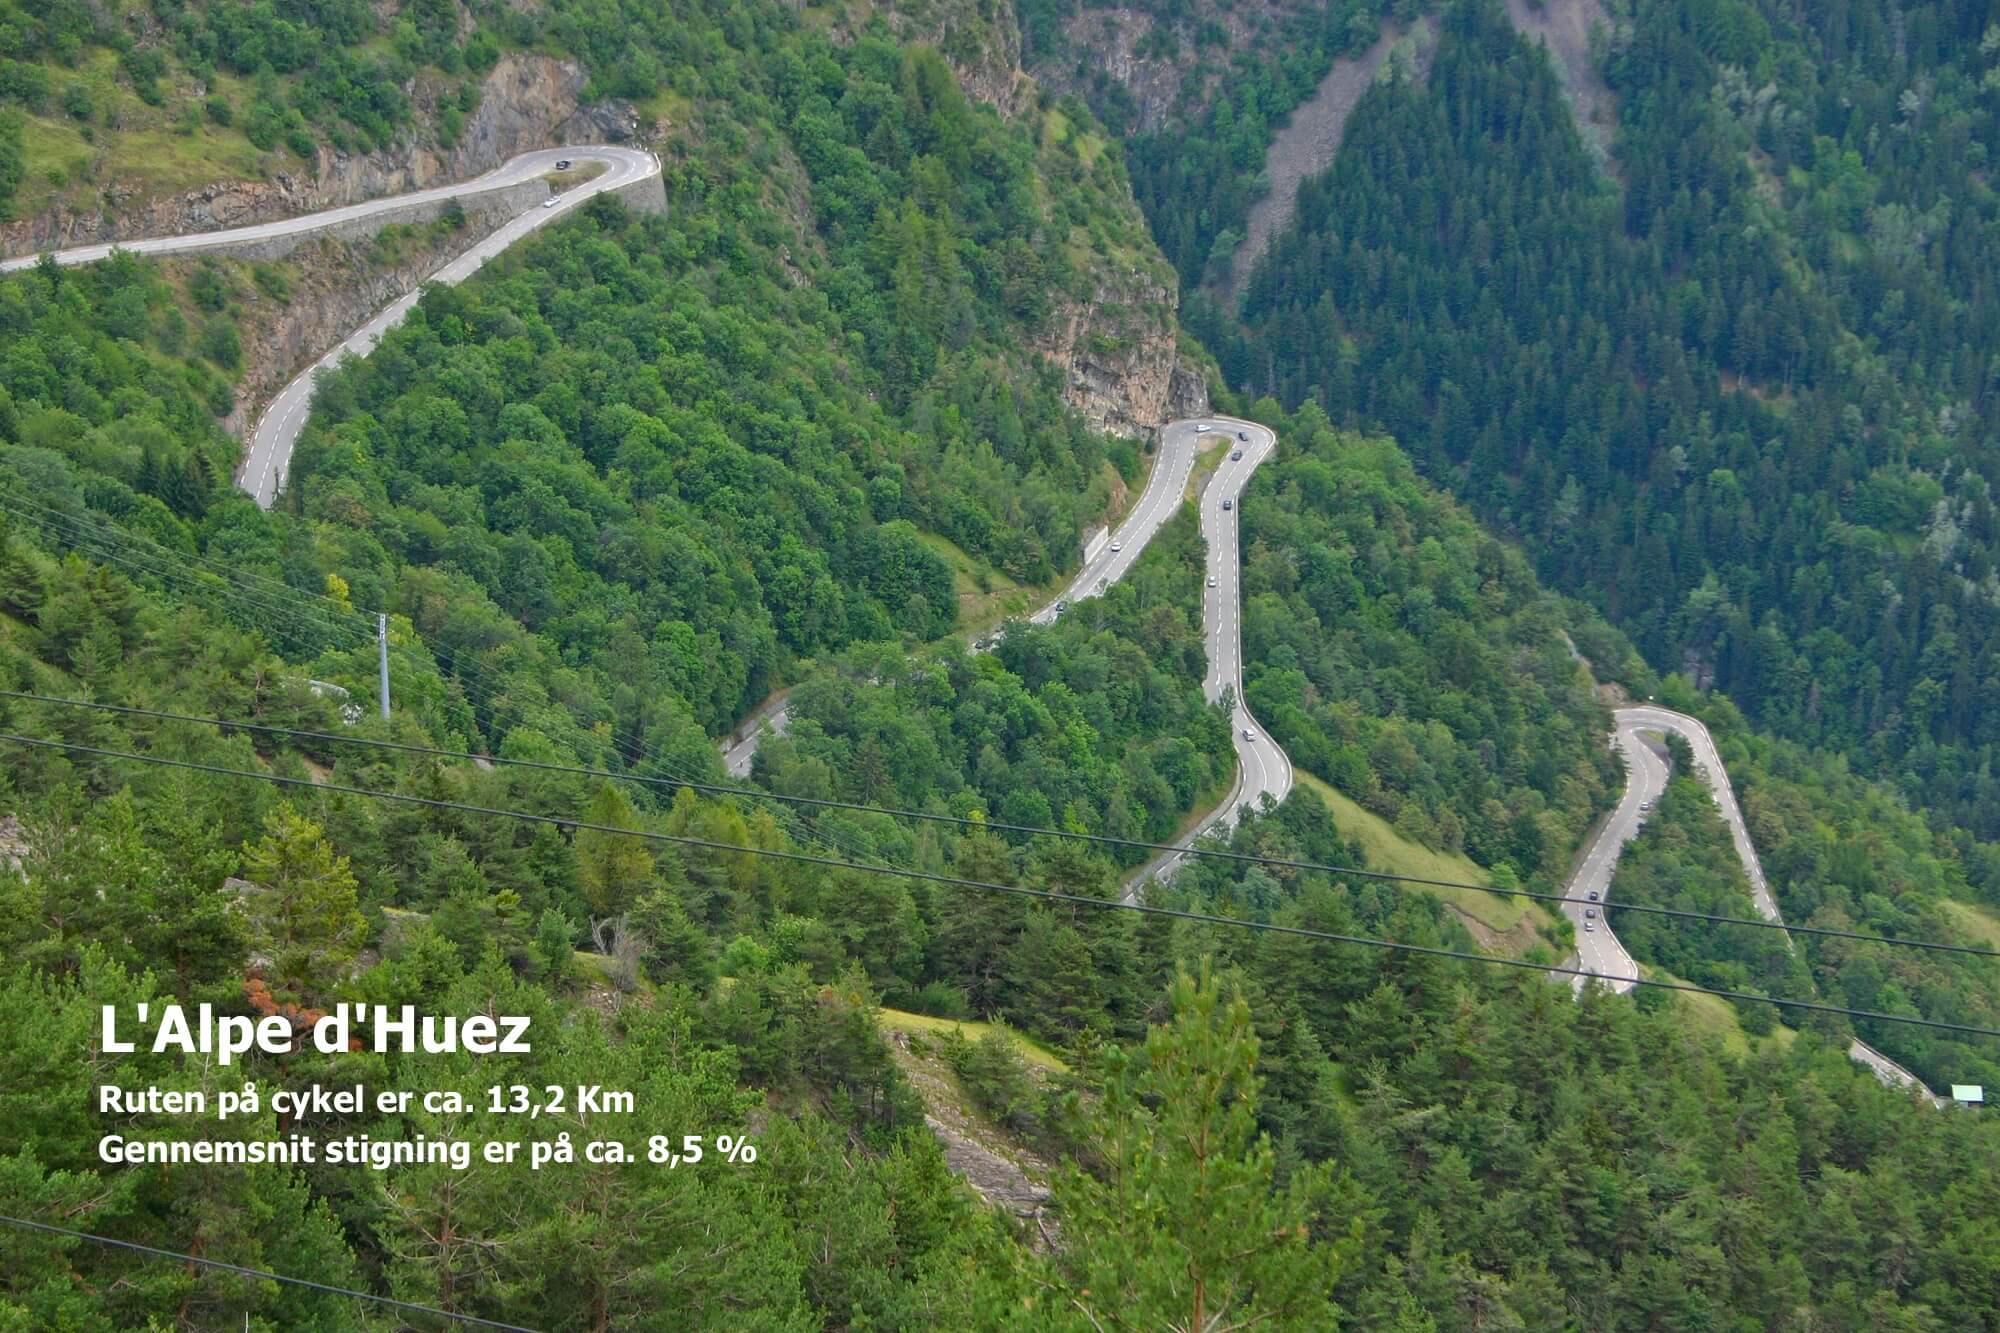 køre op ad Alpe d'Huez på cykel